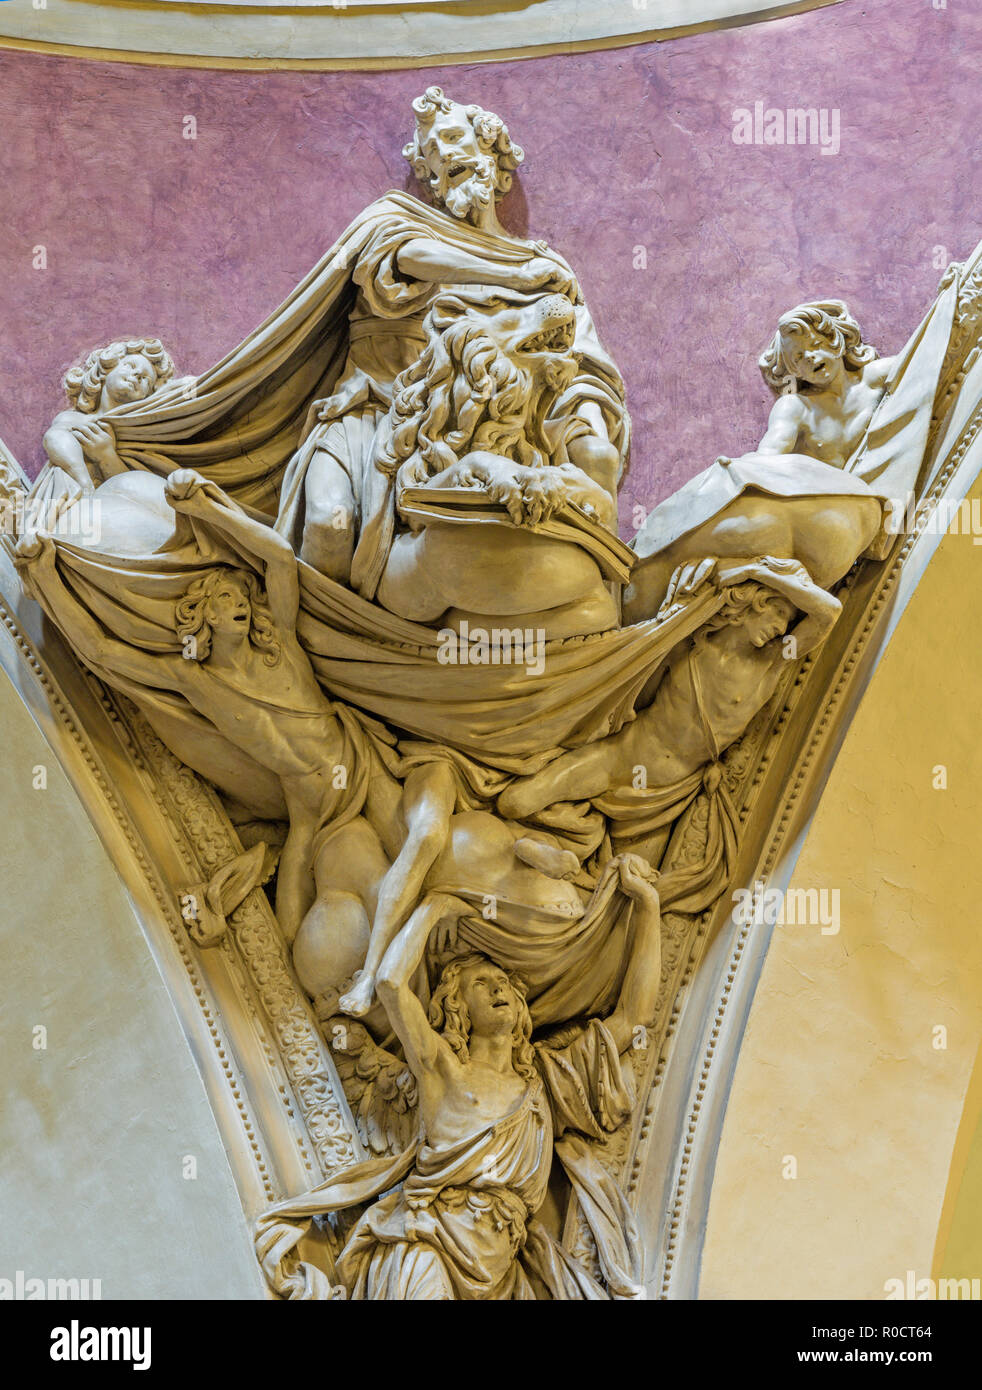 PARMA, Italia - 17 Aprile 2018: La statua barocca di San Marco Evangelista nella cupola della chiesa di Santa Teresa di Domenico Reti da 17 cent. Foto Stock